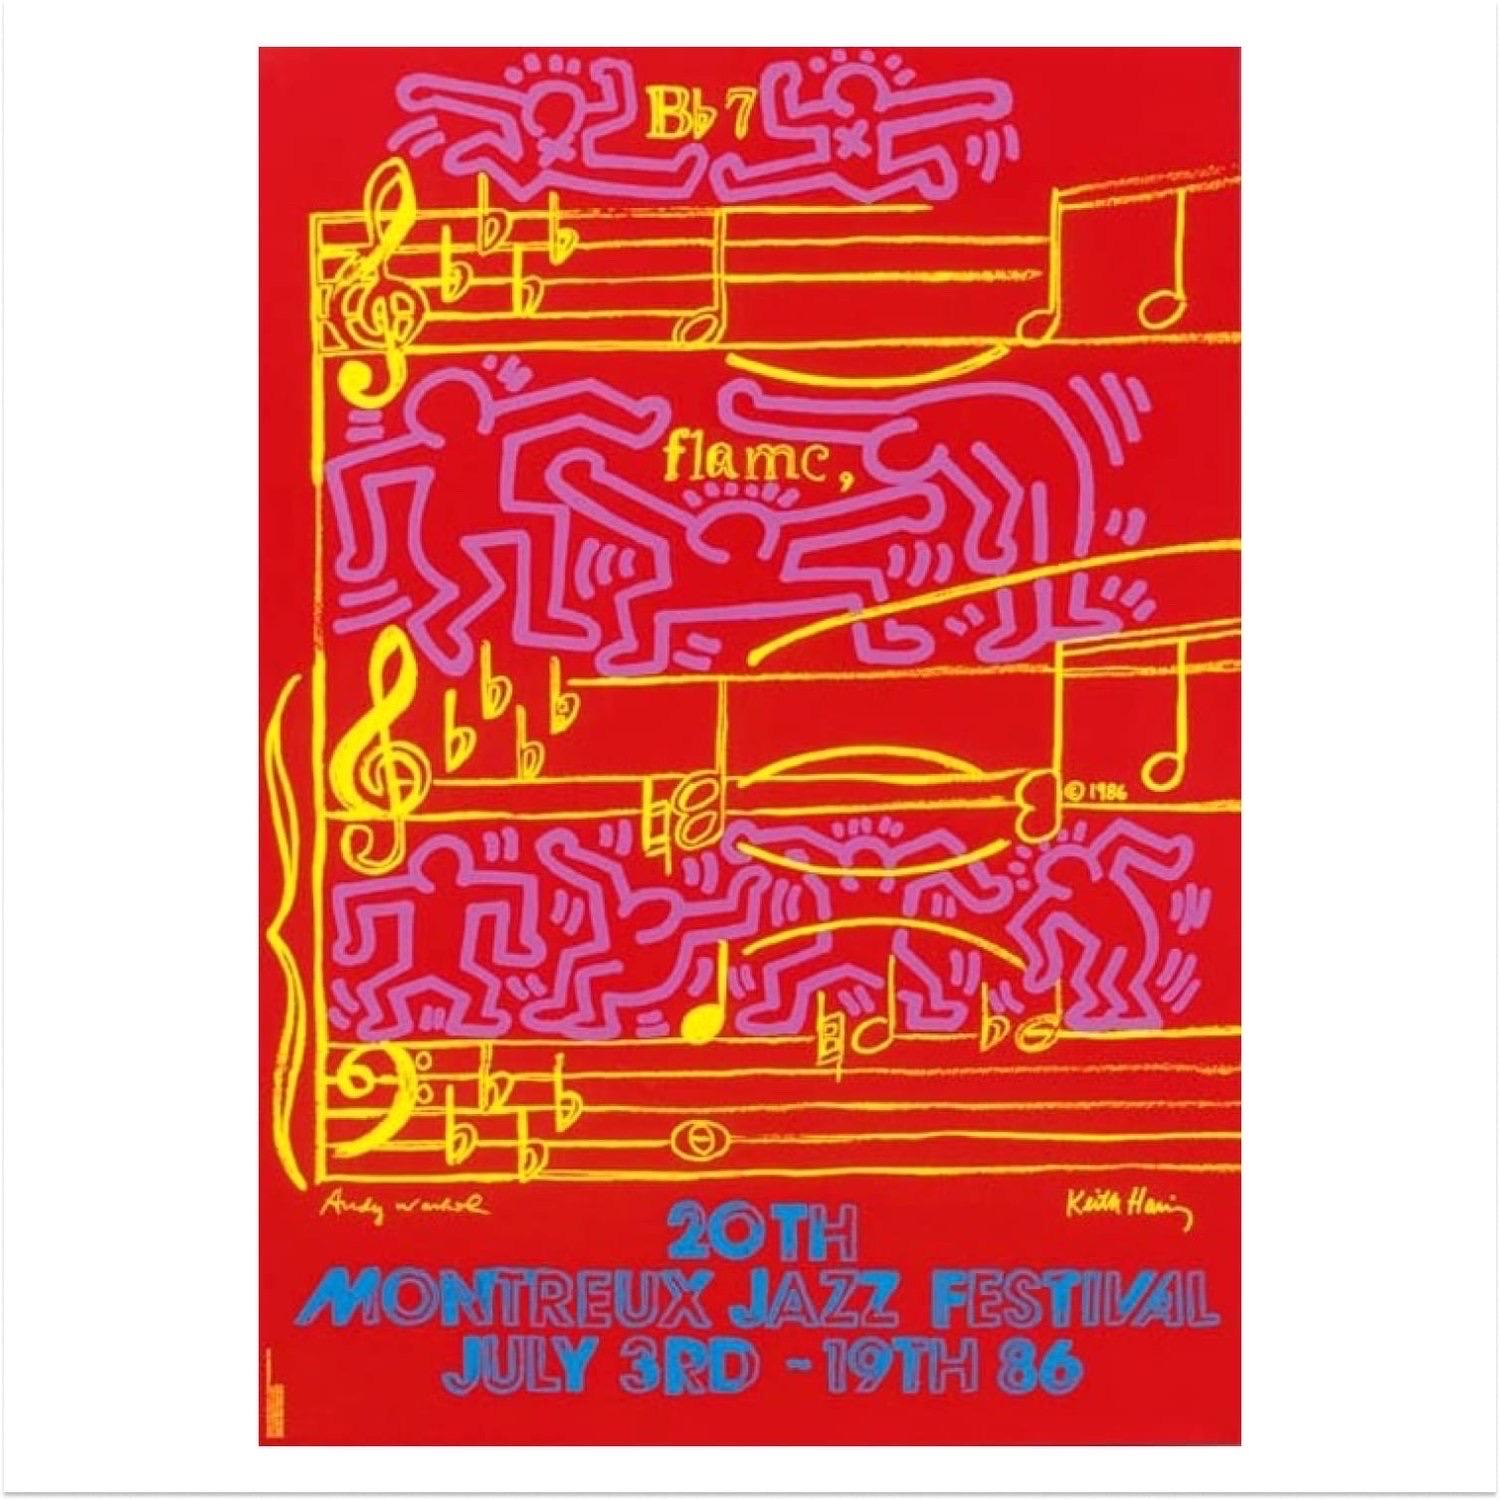 Das Montreux Jazz Festival von Keith Haring und Andy Warhol, 1986

Farbiger Siebdruck auf halbmatt gestrichenem 250-Gramm-Papier

Gedruckt von Albin Uldry

Von Keith Hairng und Andy Warhol signierte Platte 

70 x 100 cm (27.6 x 39.4 in) 

Zur Feier